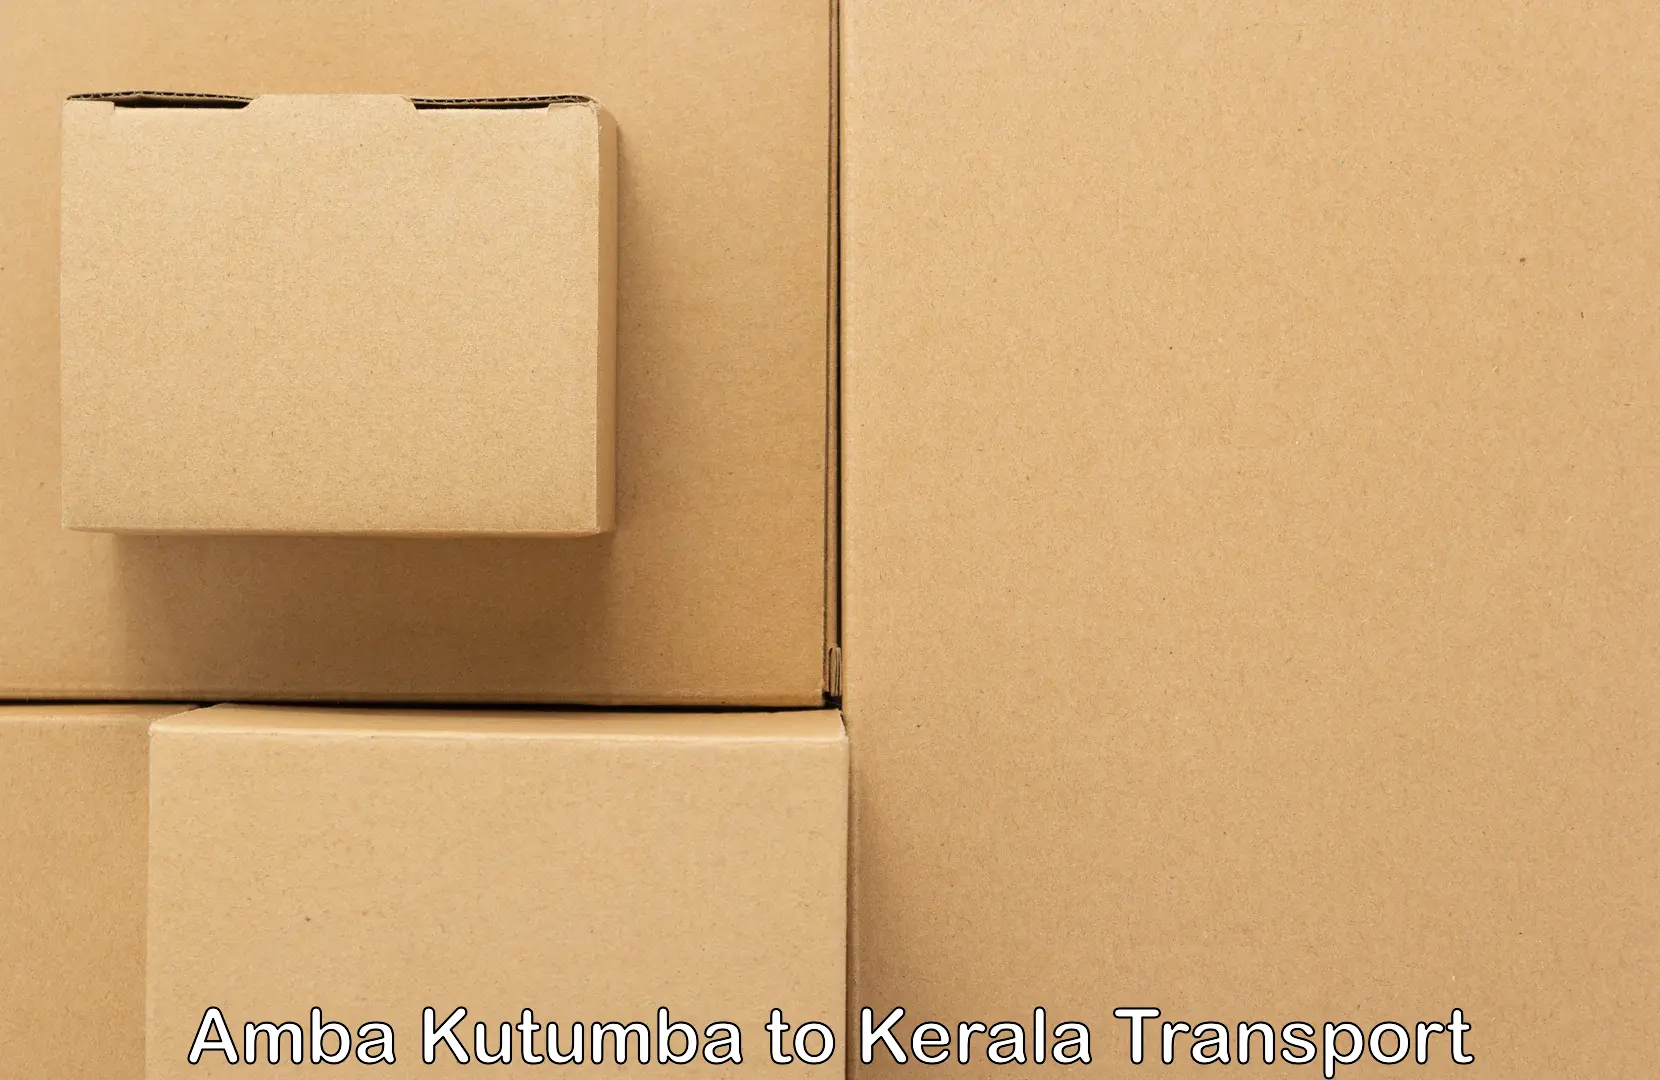 Domestic transport services Amba Kutumba to Pathanamthitta